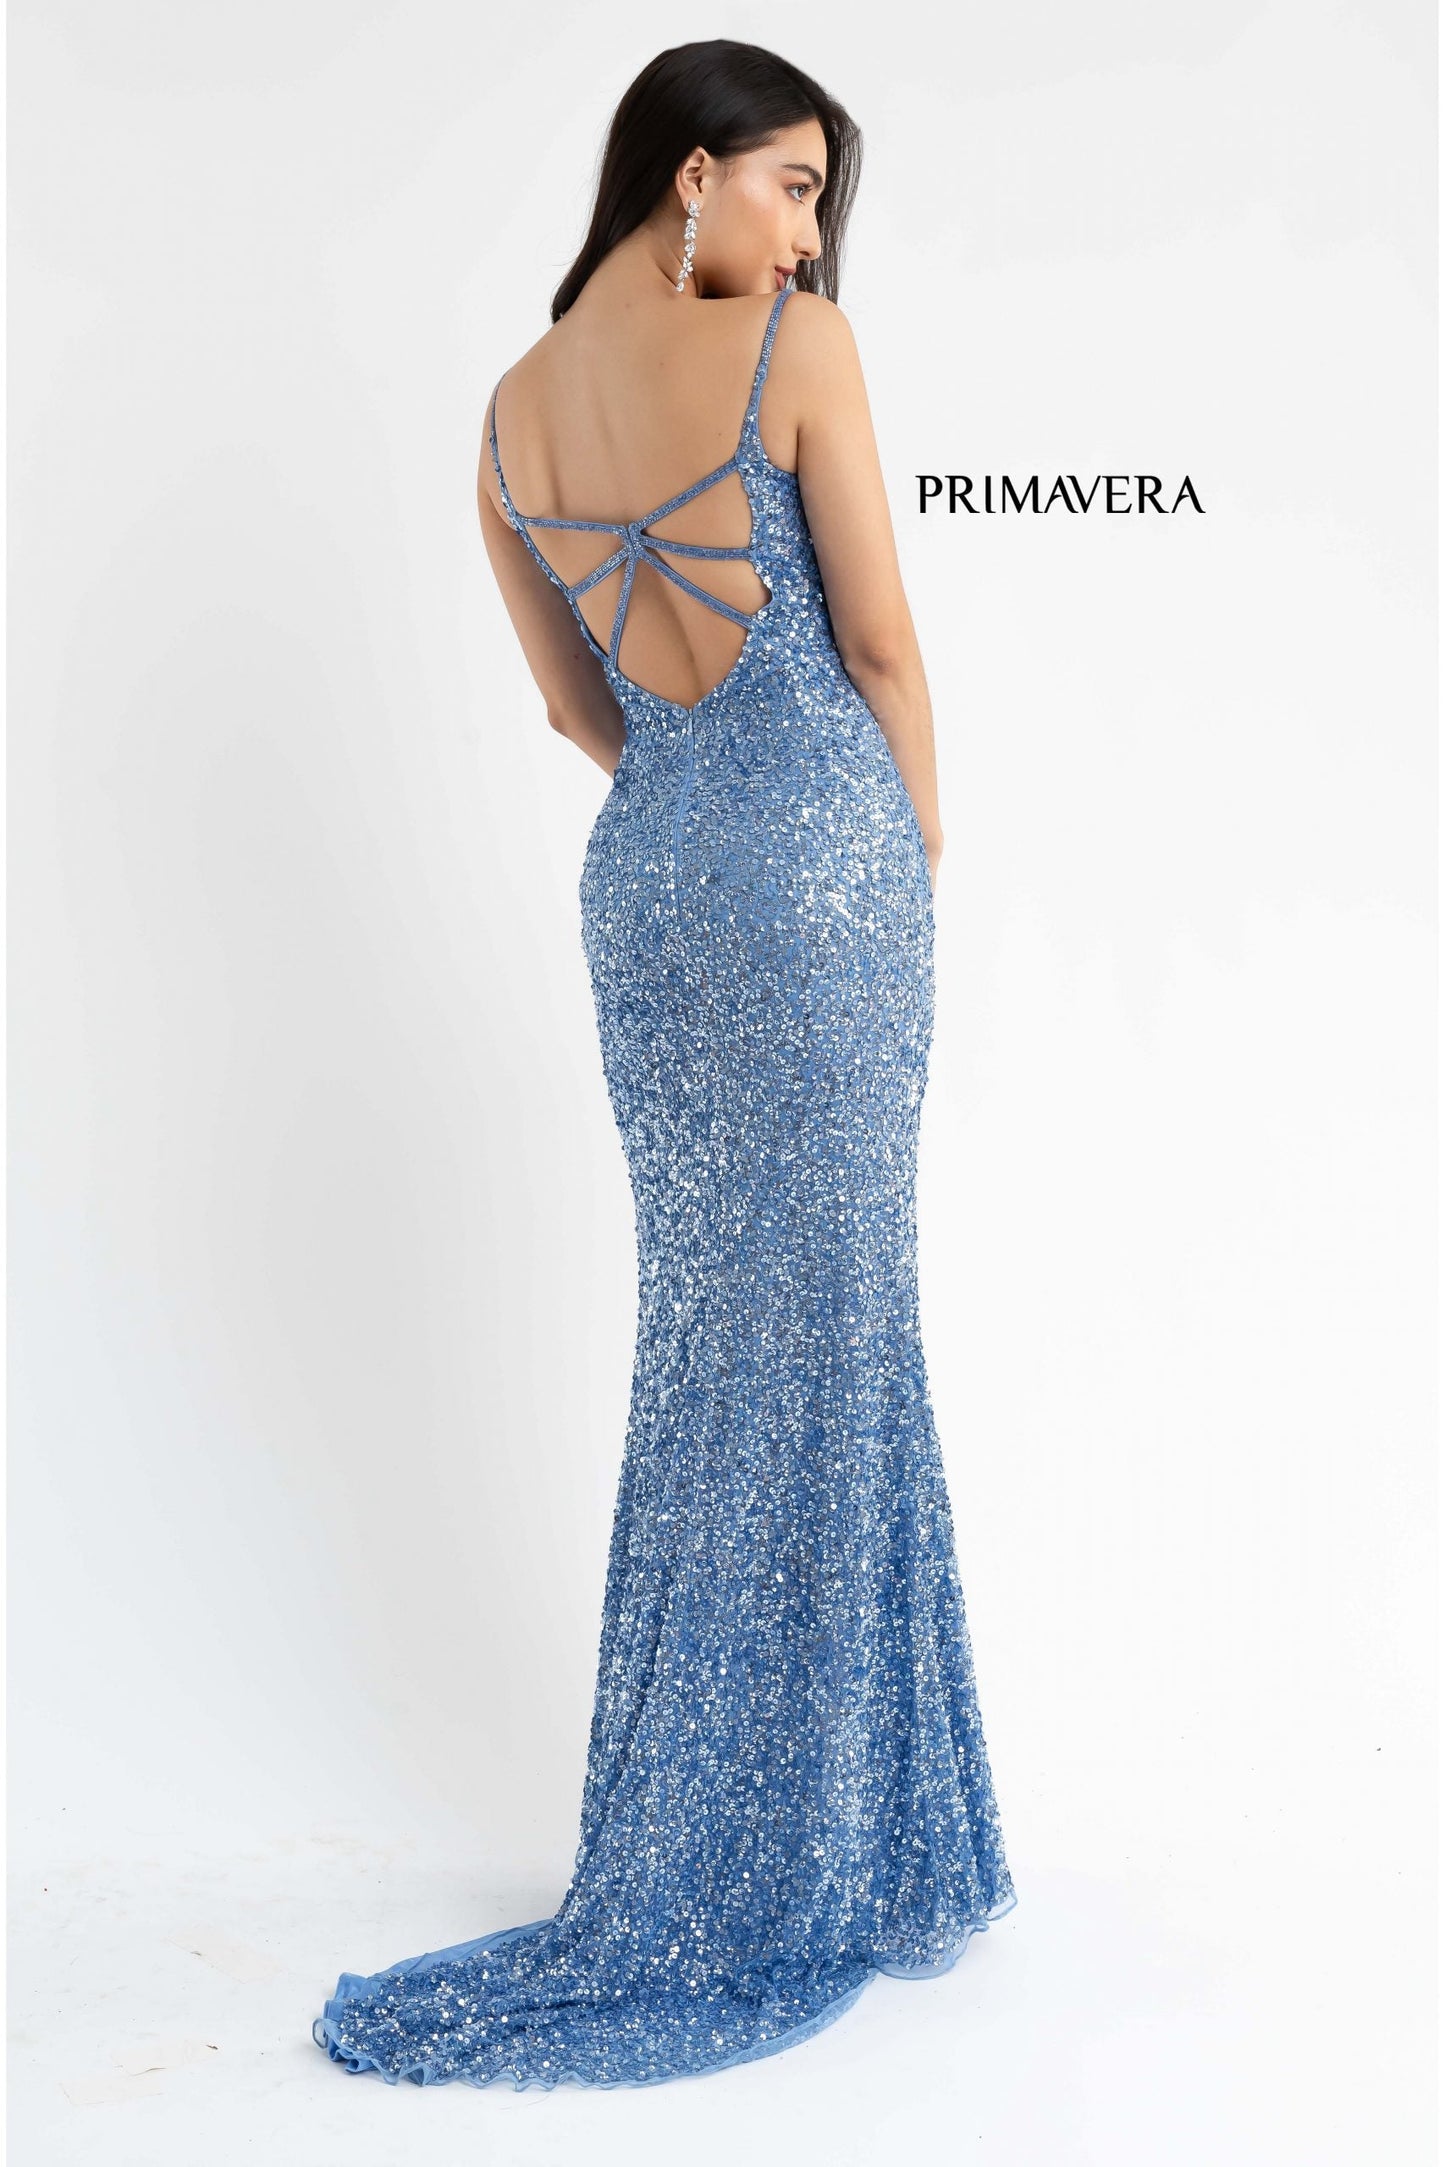 Primavera Couture 3792 Size 8 Bright Blue Sequin Prom Dress V Neckline Strappy Open Back Side Slit Train